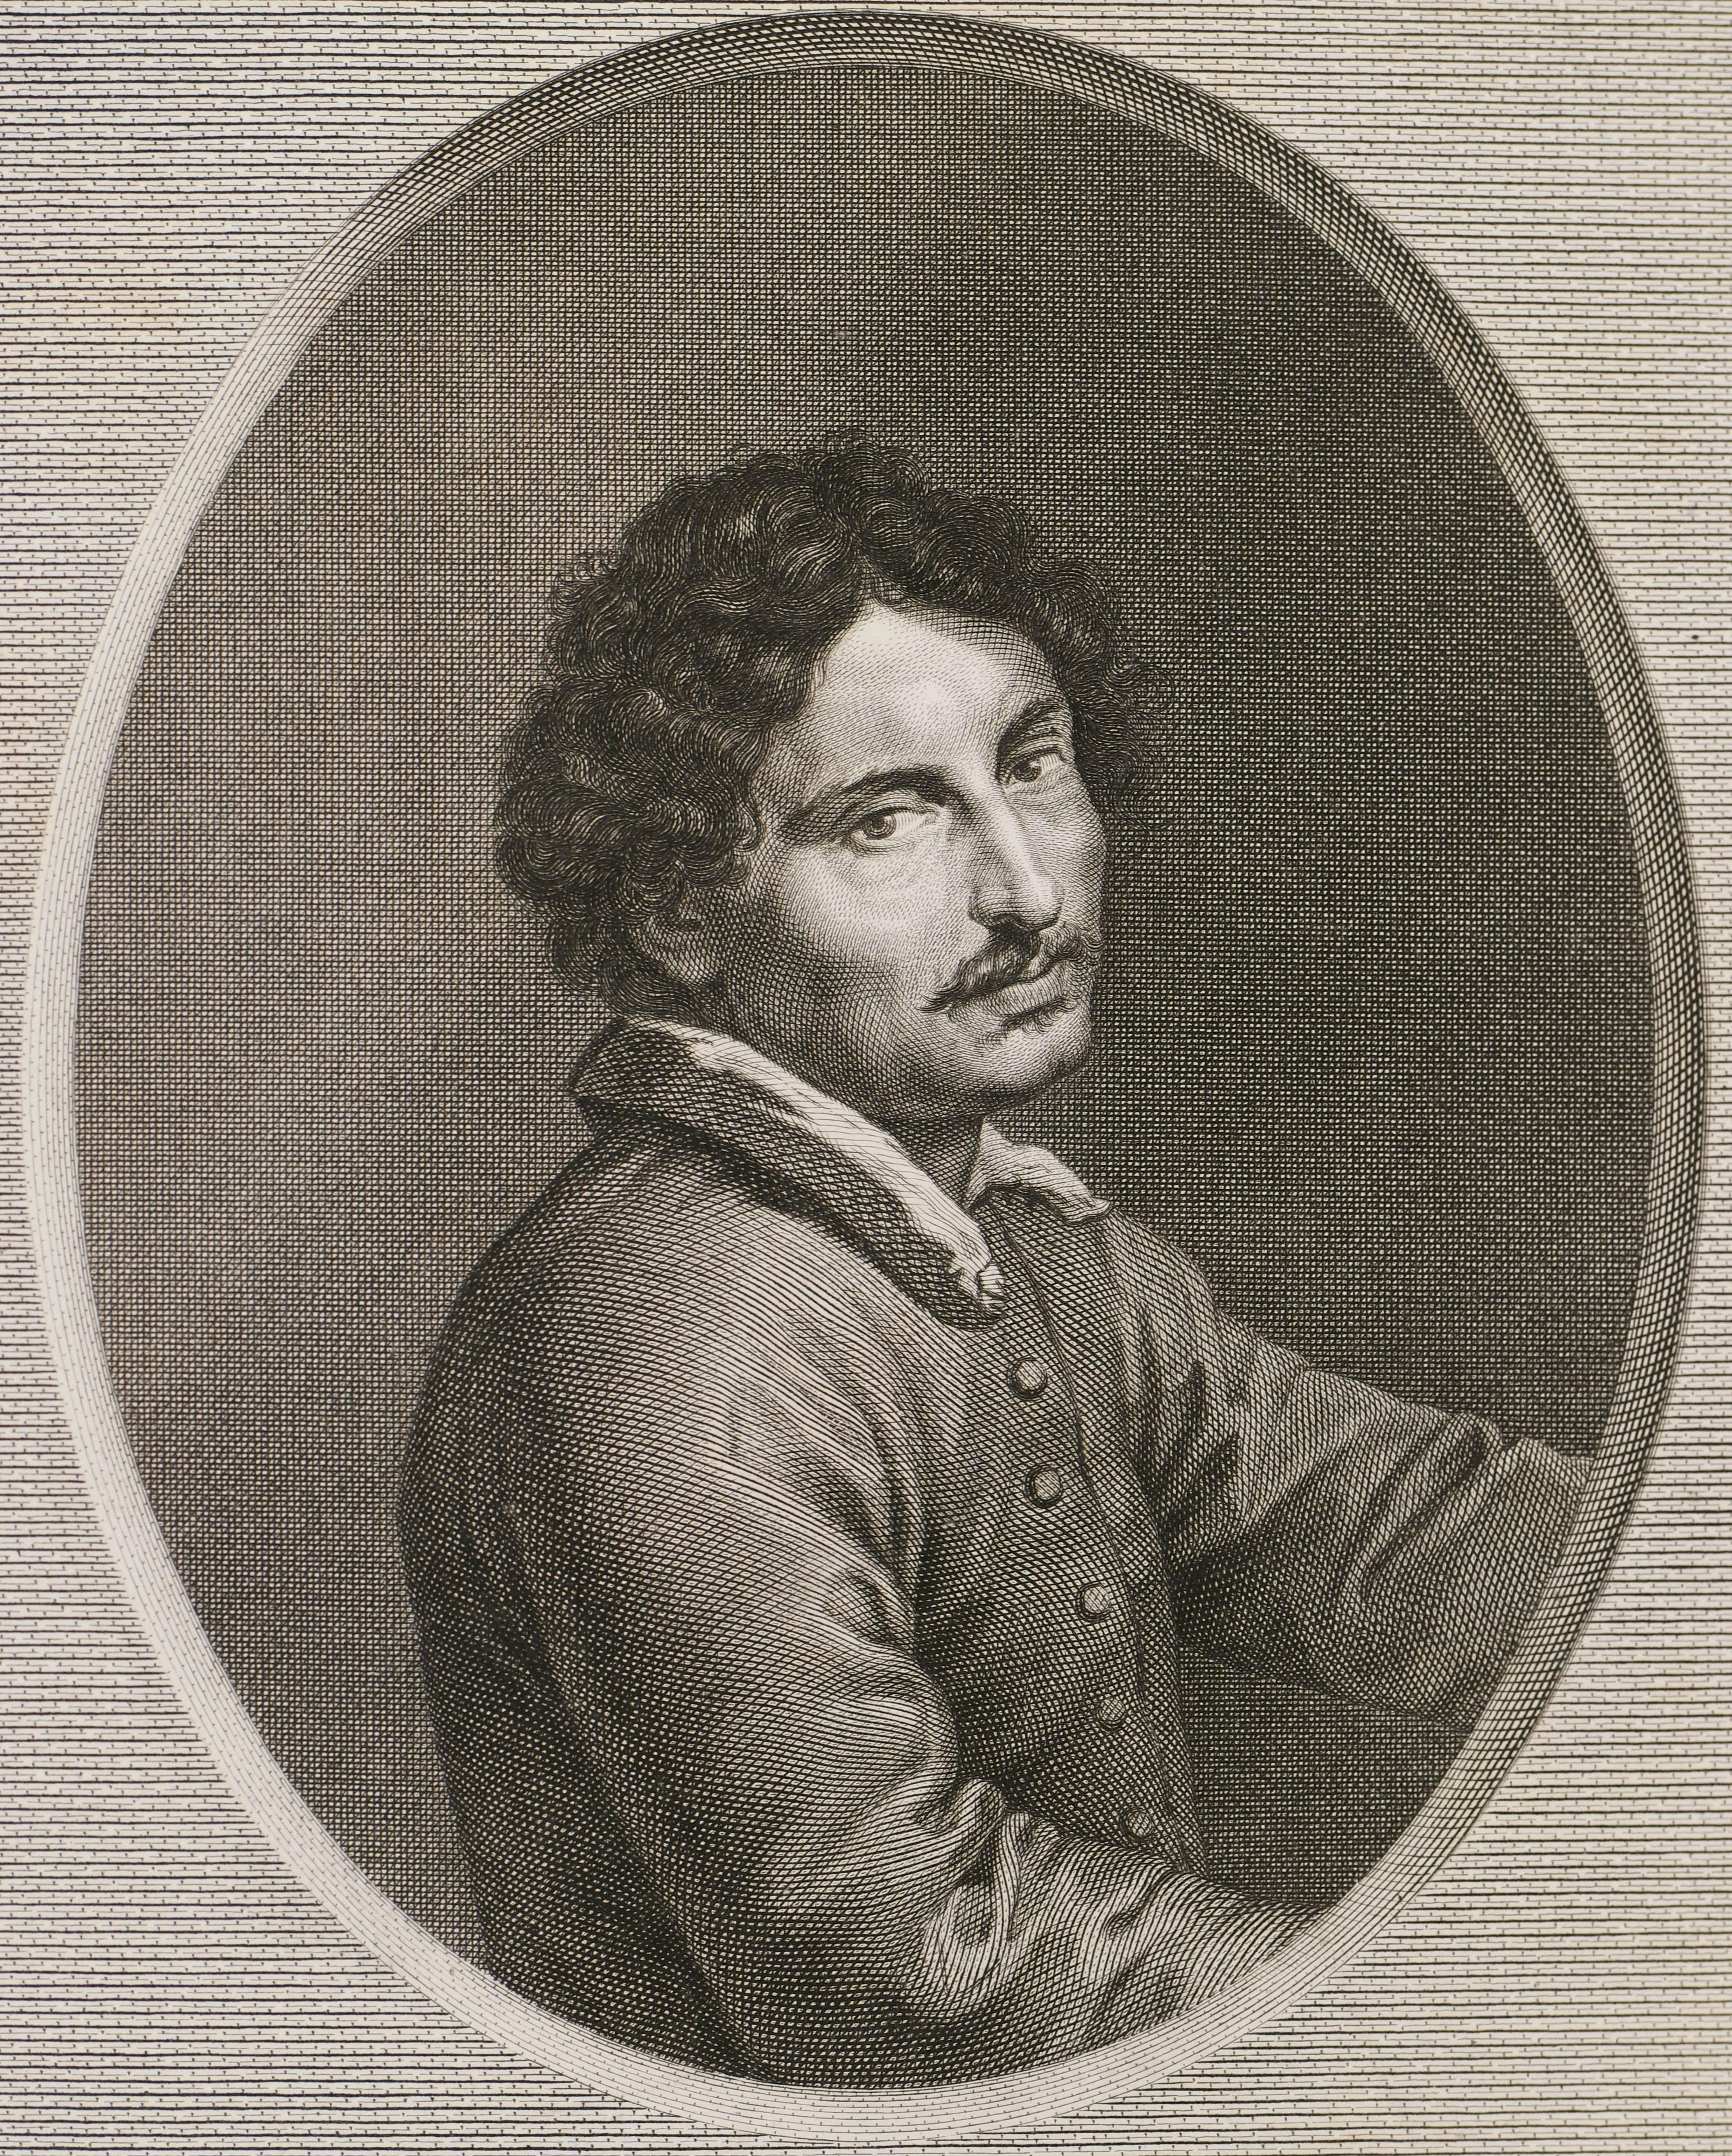 Portrait of Michele Angelo da Caravaggio - Print by Unknown